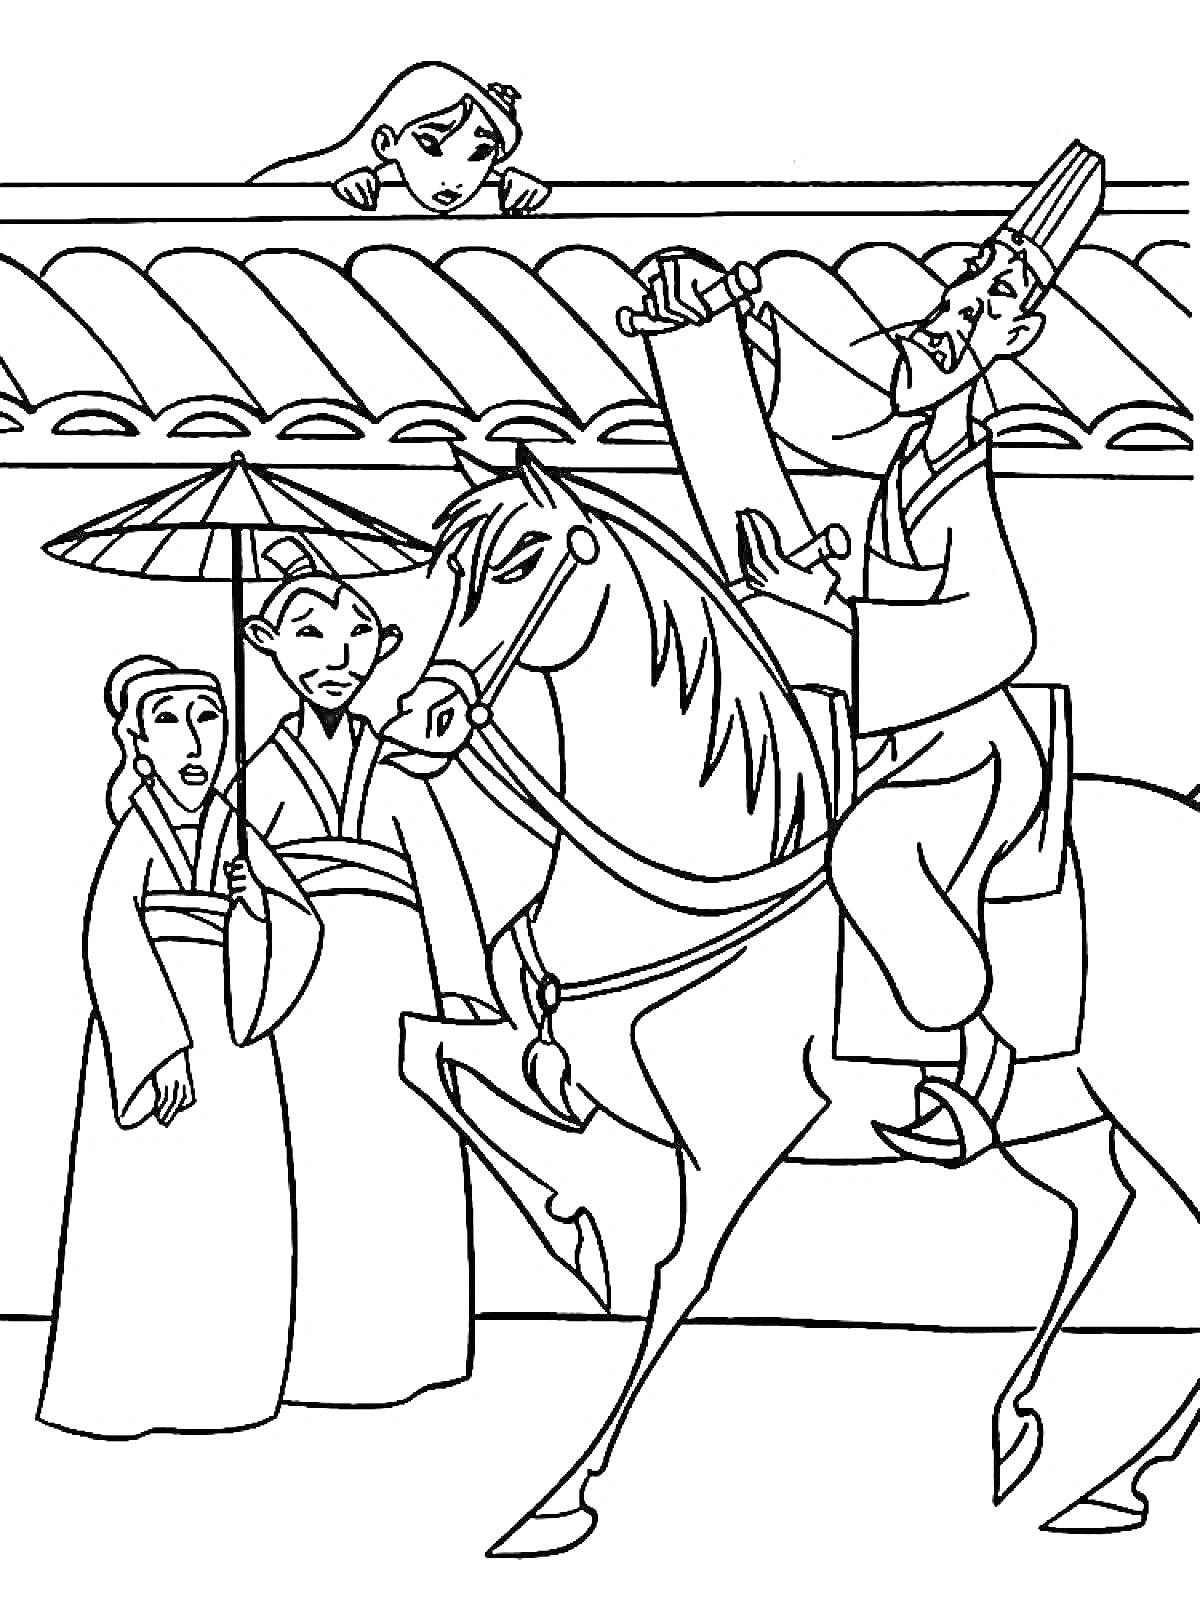 Мулан, мужчина на лошади читает указ, две женщины под зонтиком, девушка выглядывает из-за стены